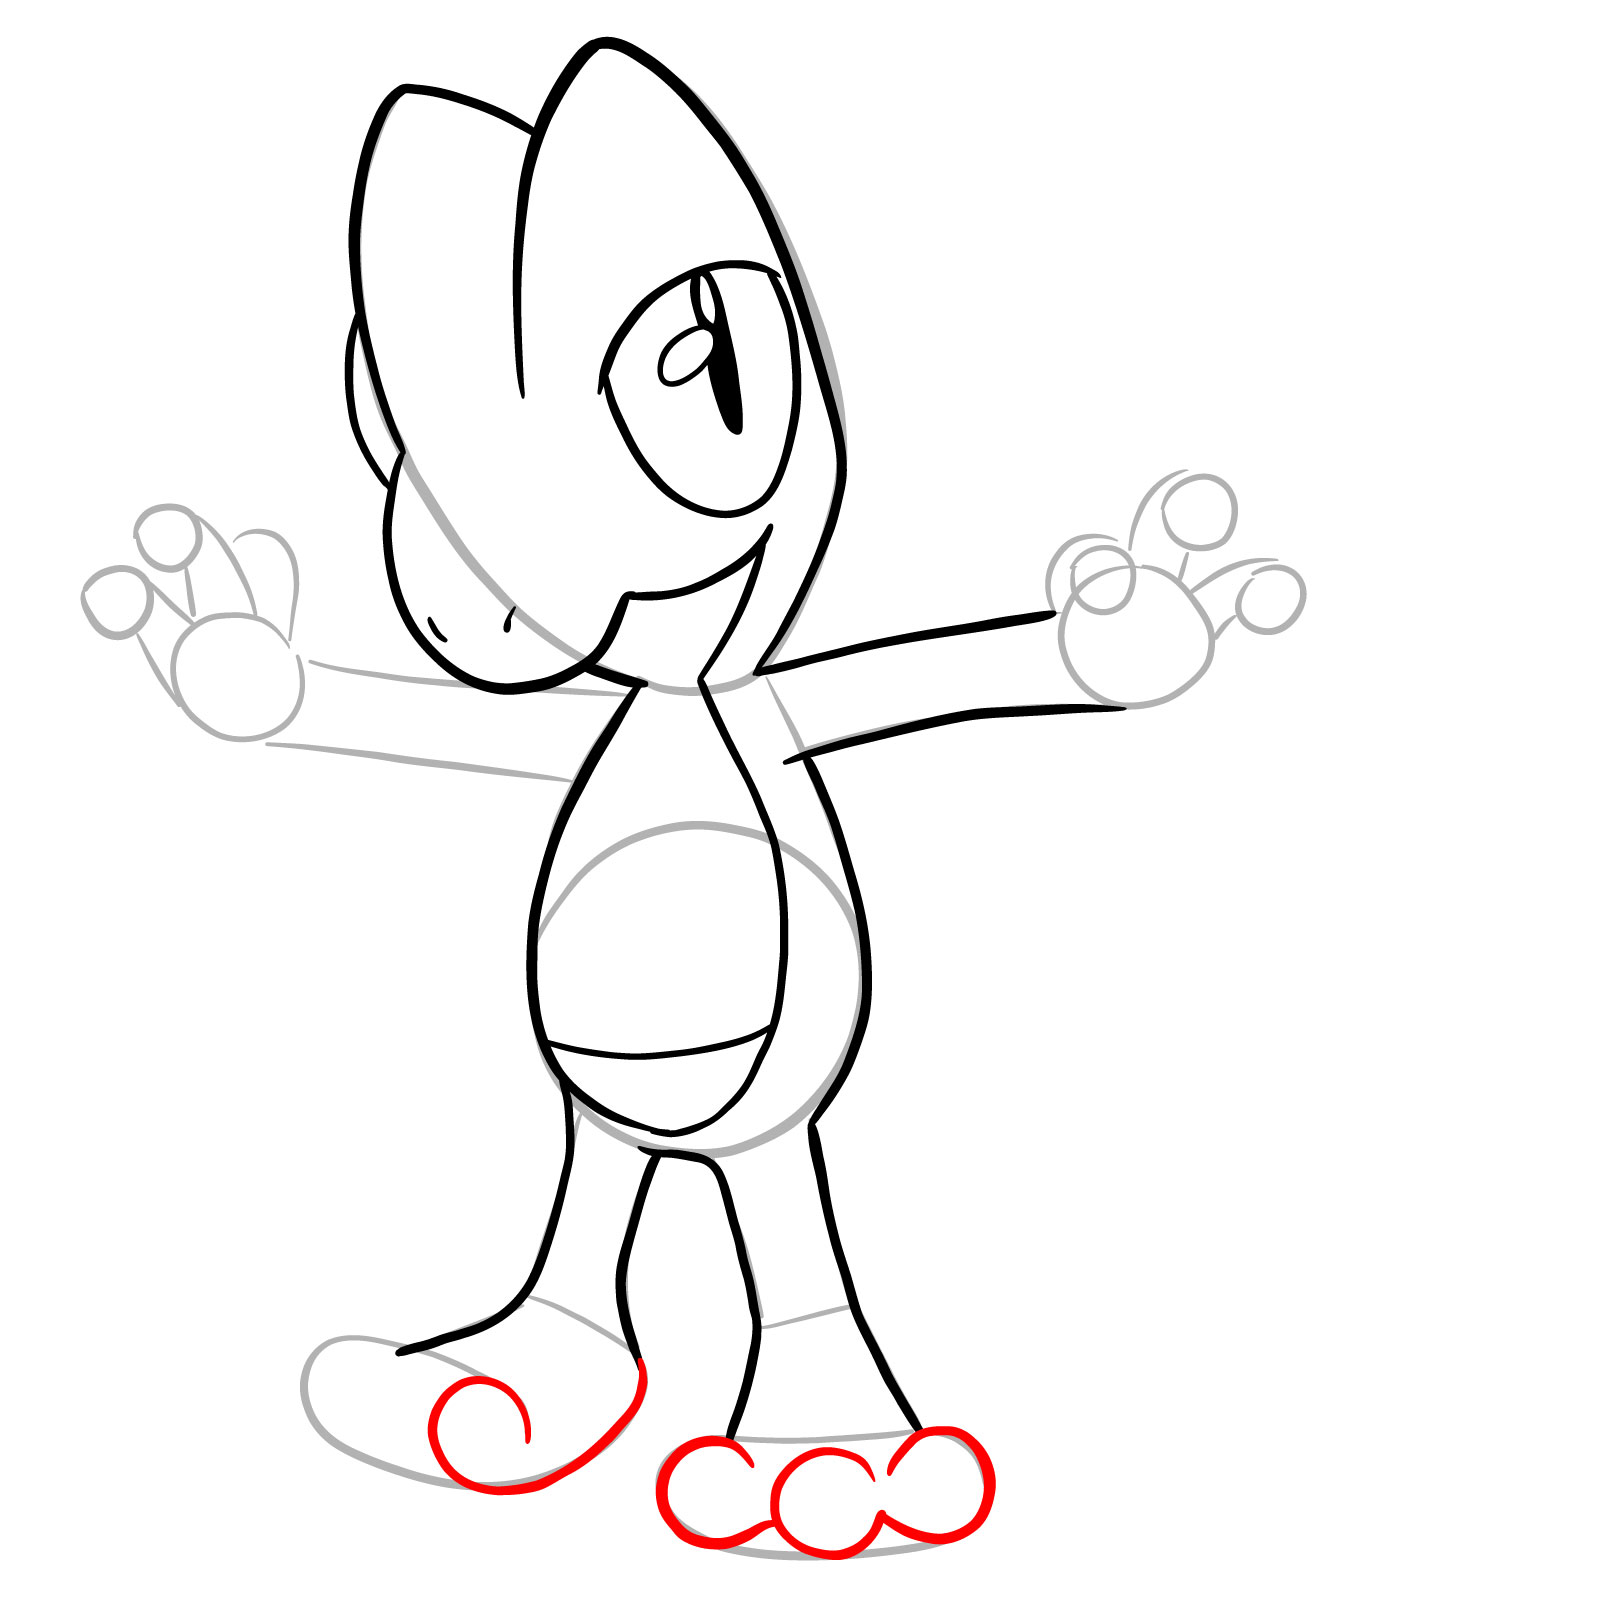 How to draw Treecko Pokemon - step 17